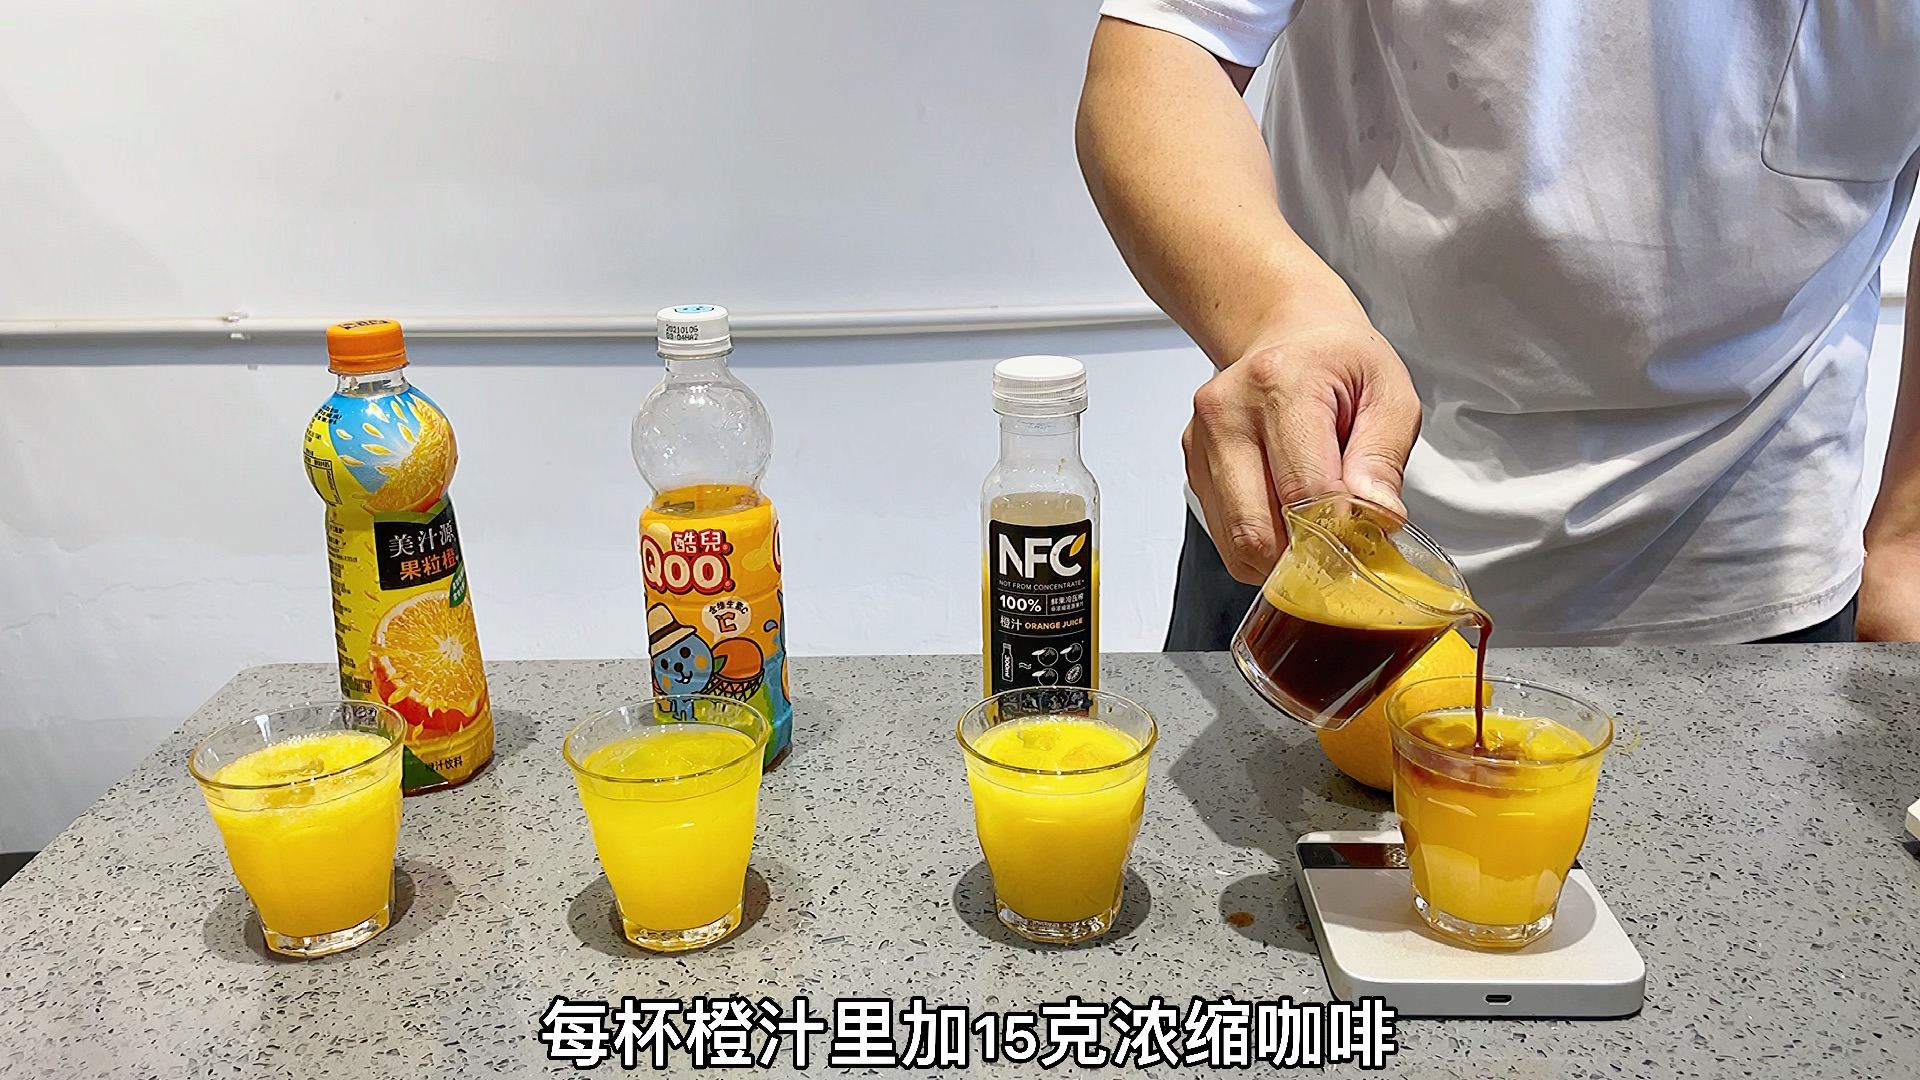 用玻璃杯盛放新鲜橙汁图片下载 - 觅知网